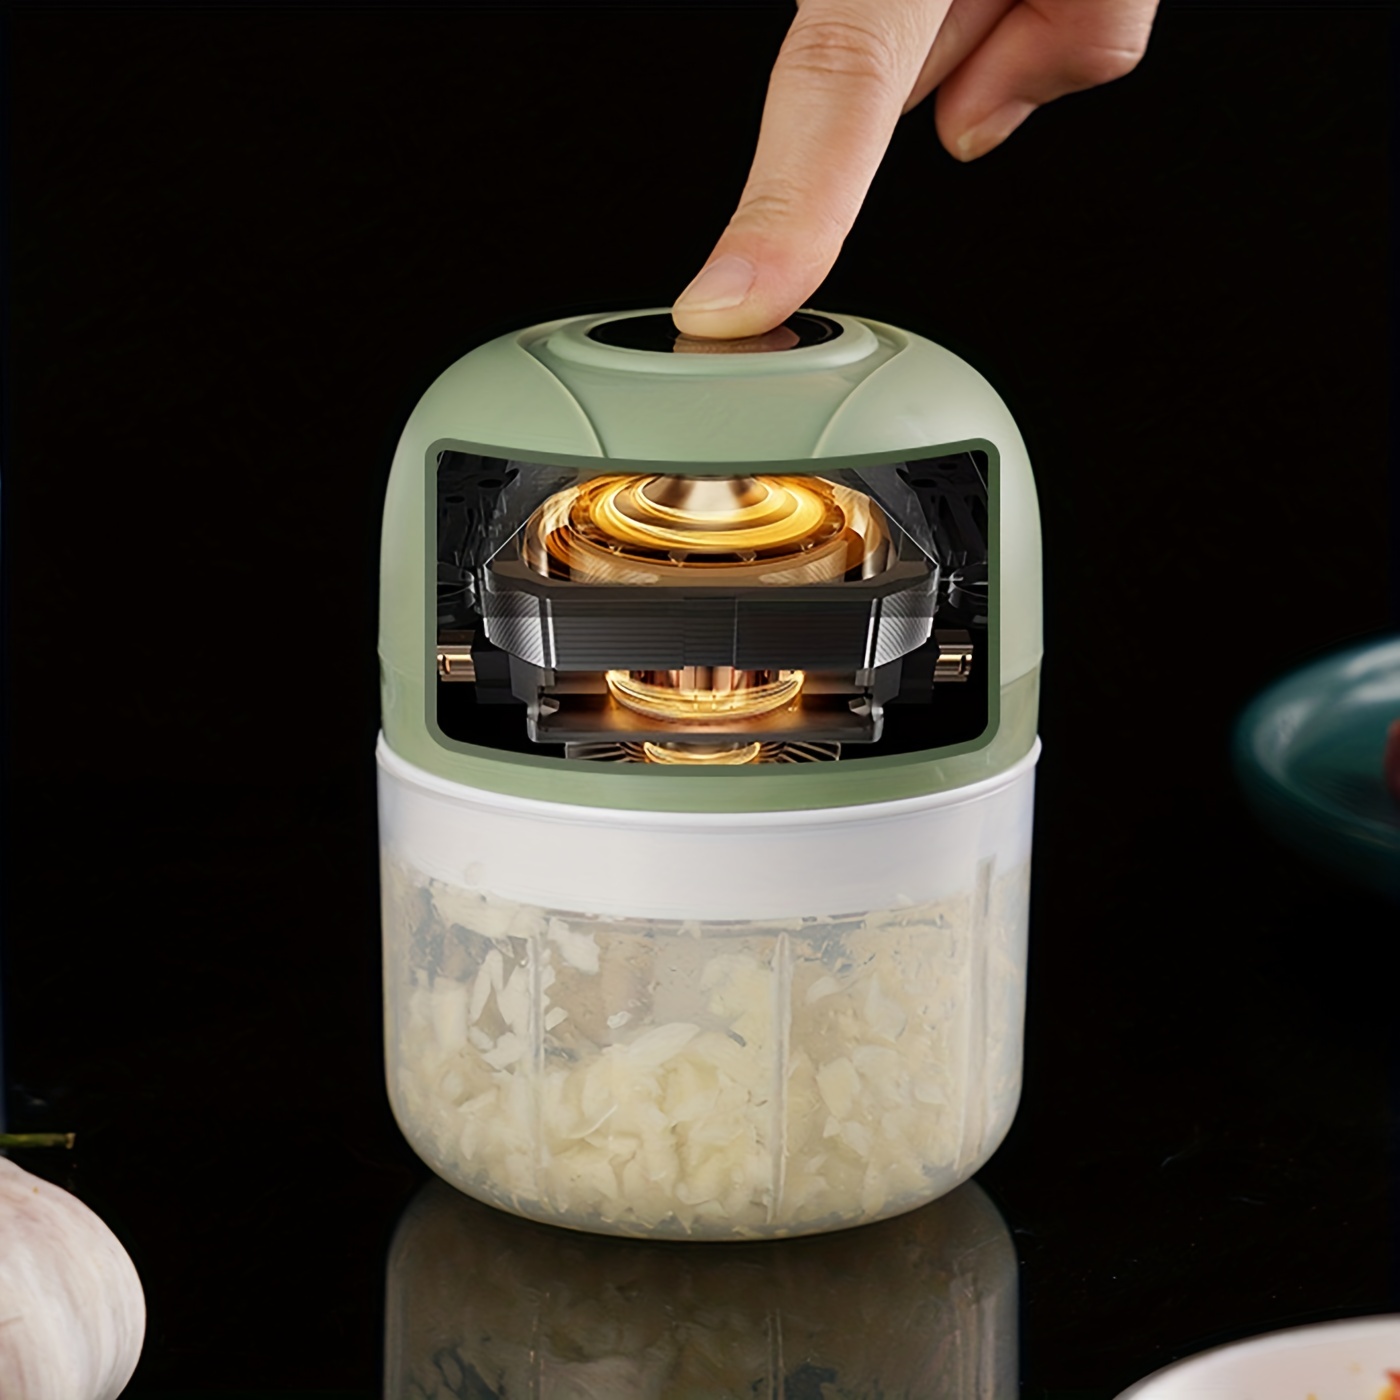 Electric Garlic Chopper Cooking Machine Onion Chopper Usb - Temu